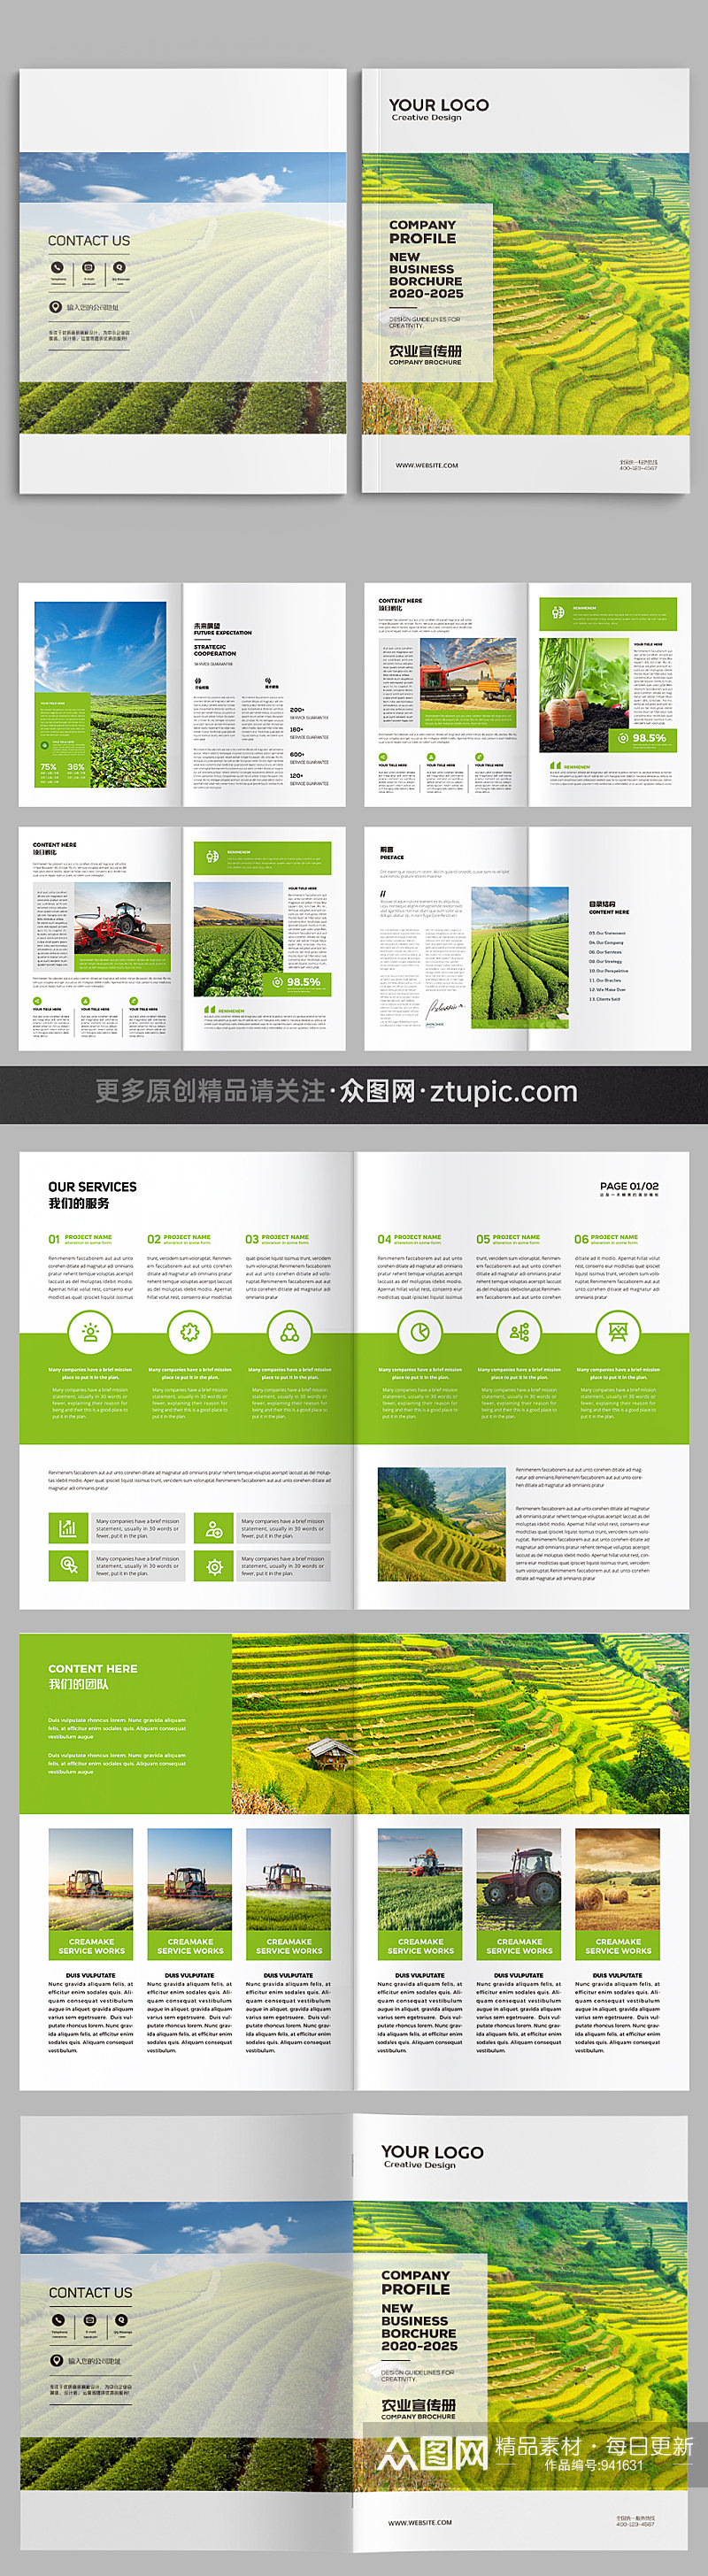 绿色农业宣传册设计模板素材